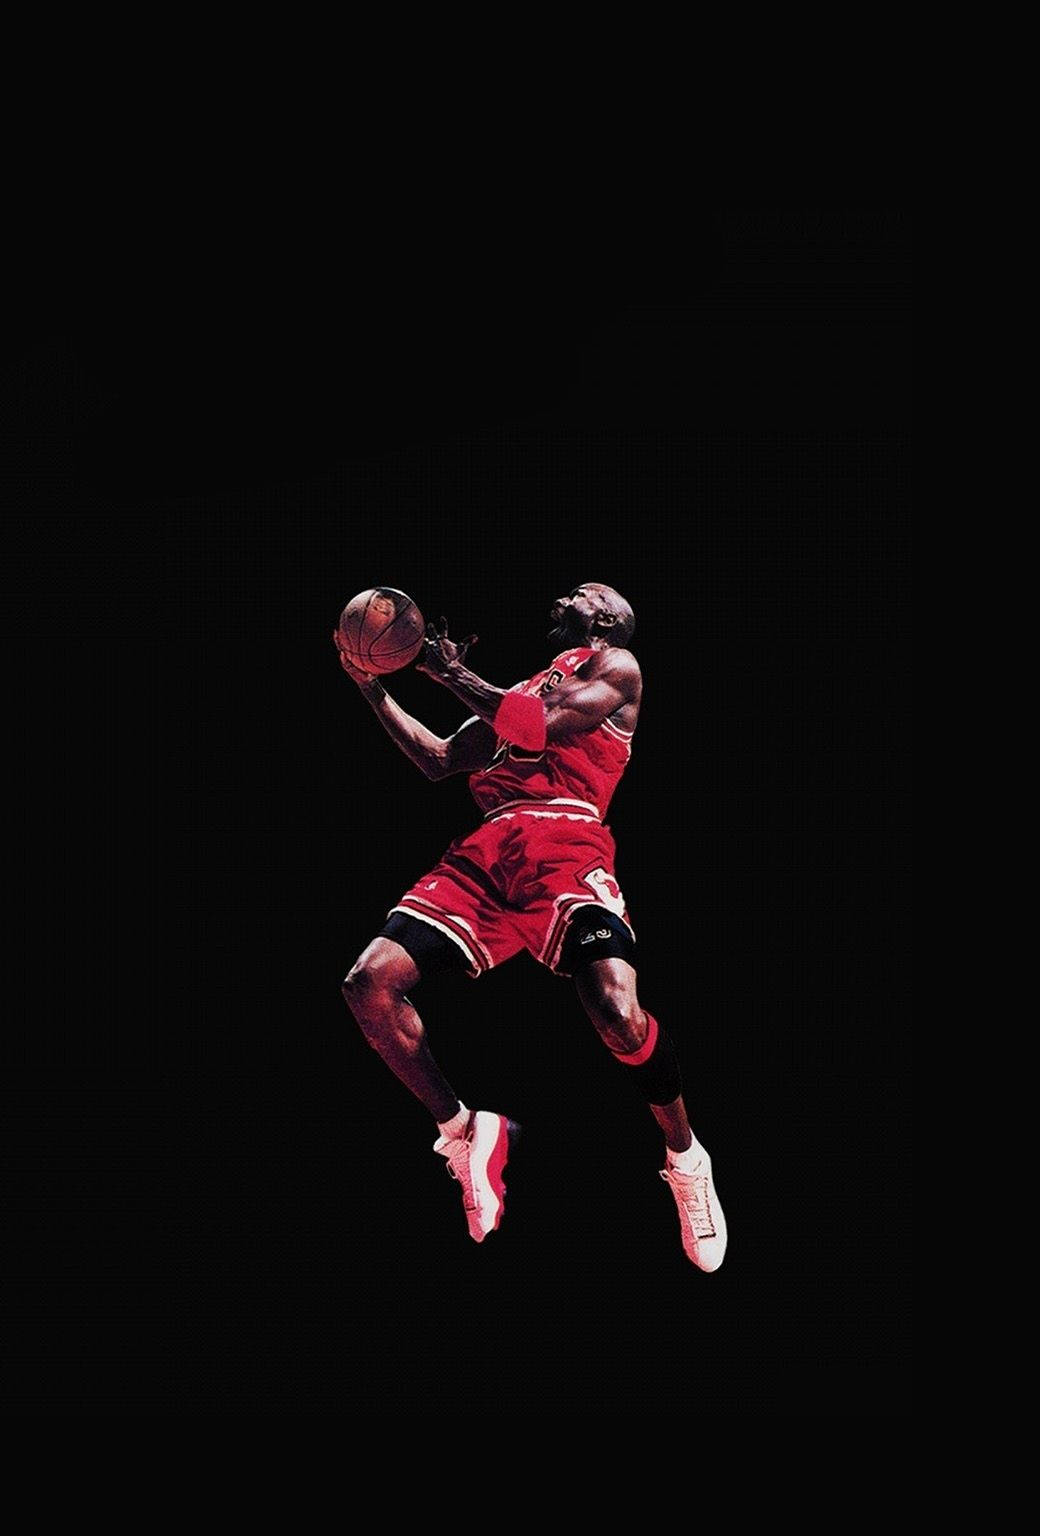 Seje Nike Michael Jordan Plakat Wallpaper